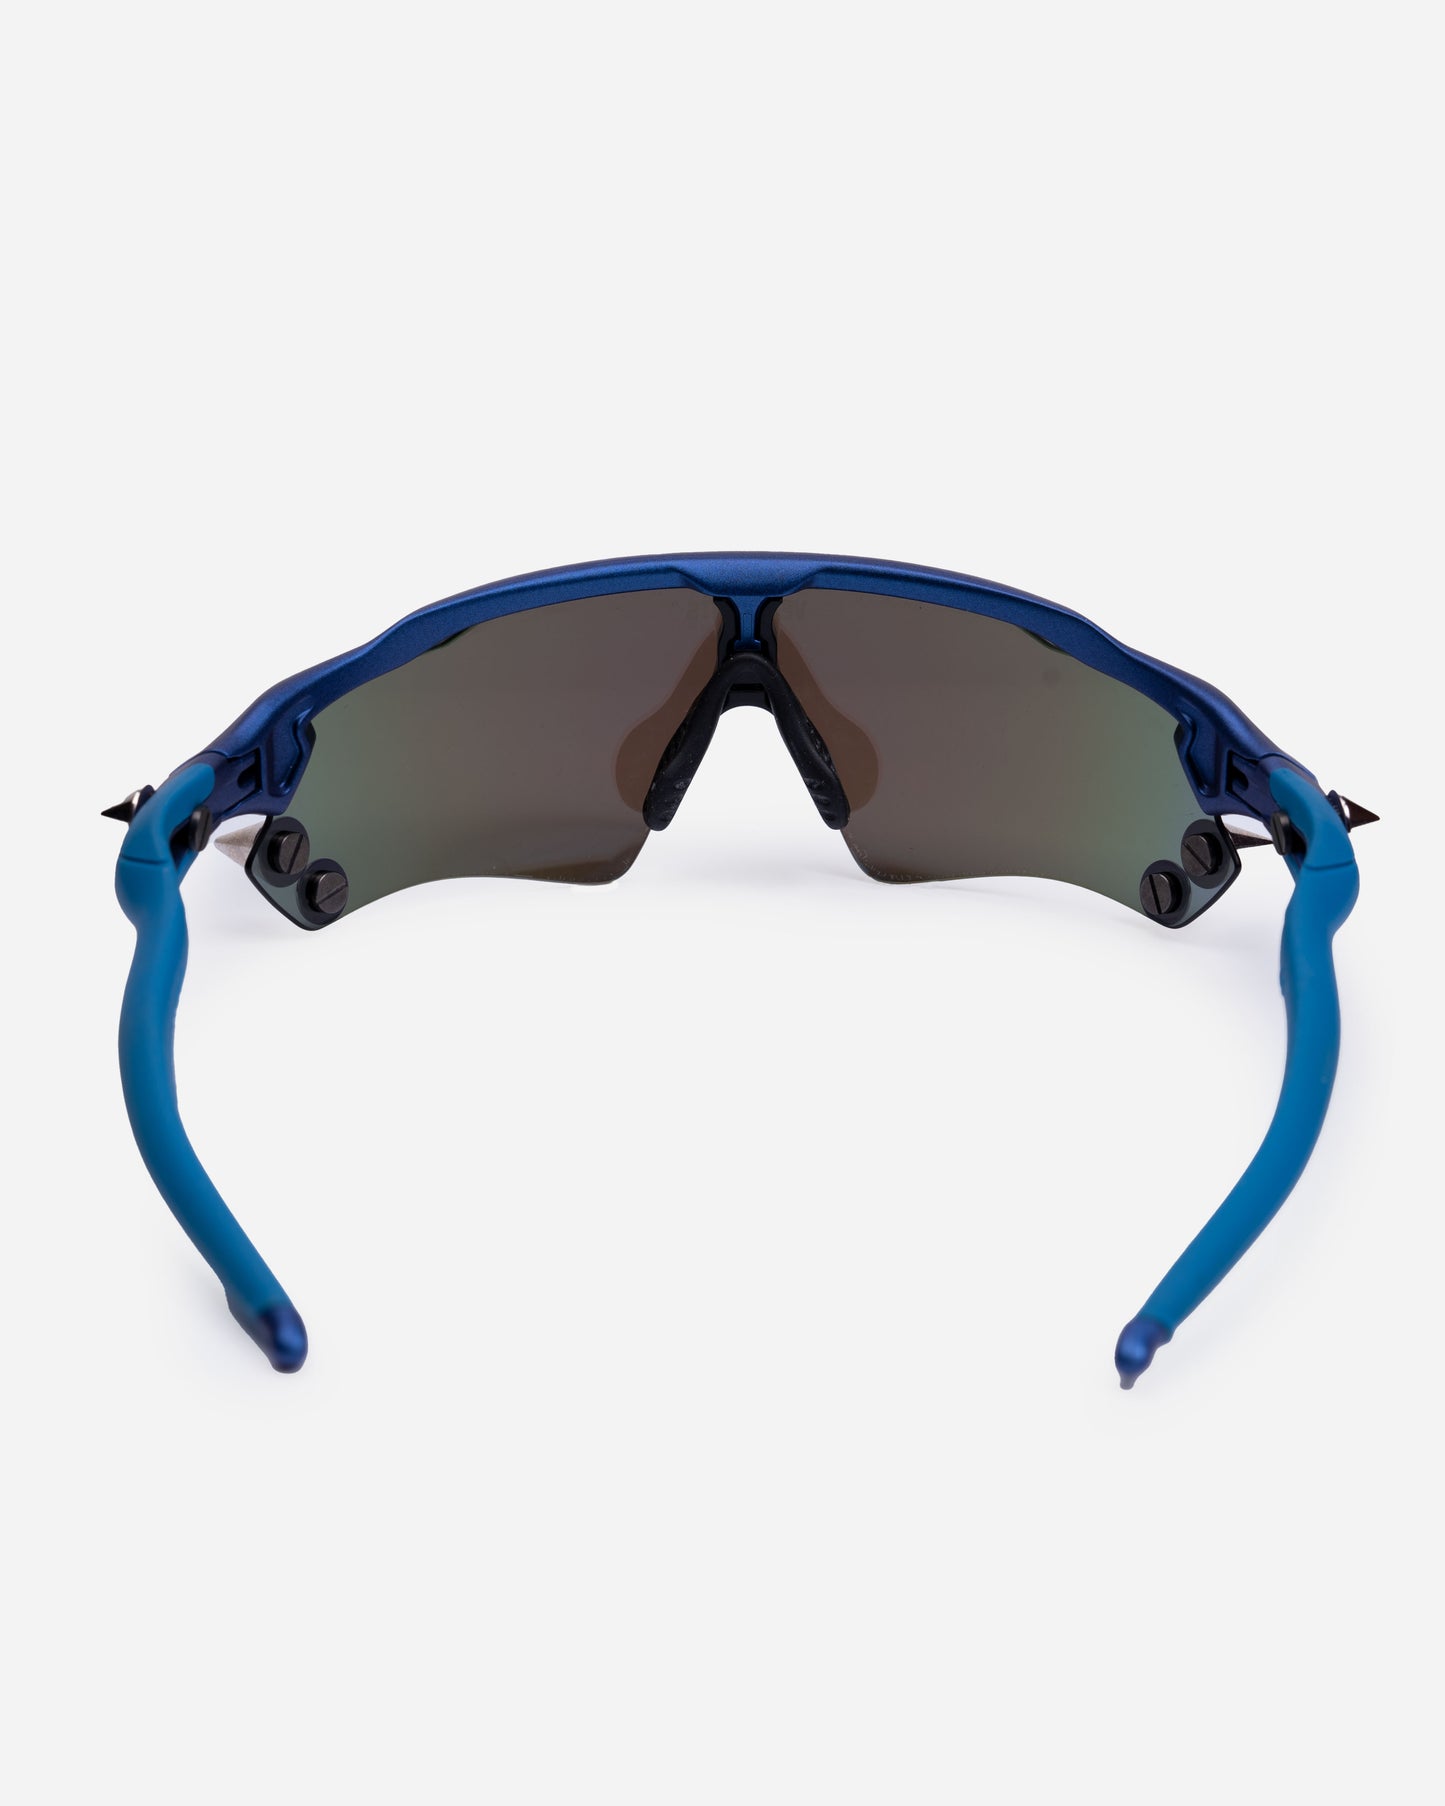 Vetements x Oakley Spike 200 sunglasses